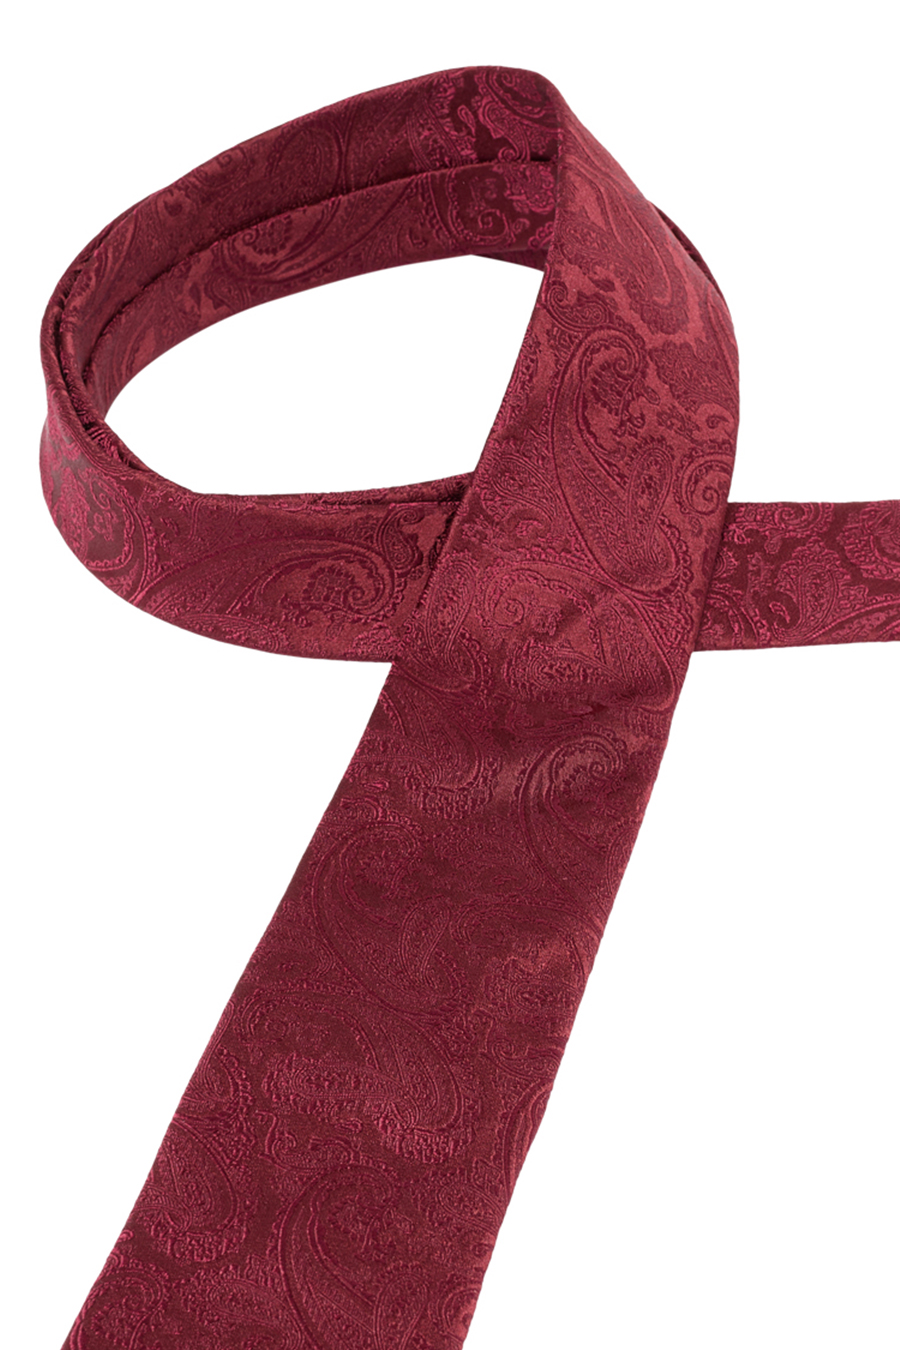 ETERNA 1863 Krawatte reiner aus 7,5 cm Seide breit dunkelrot